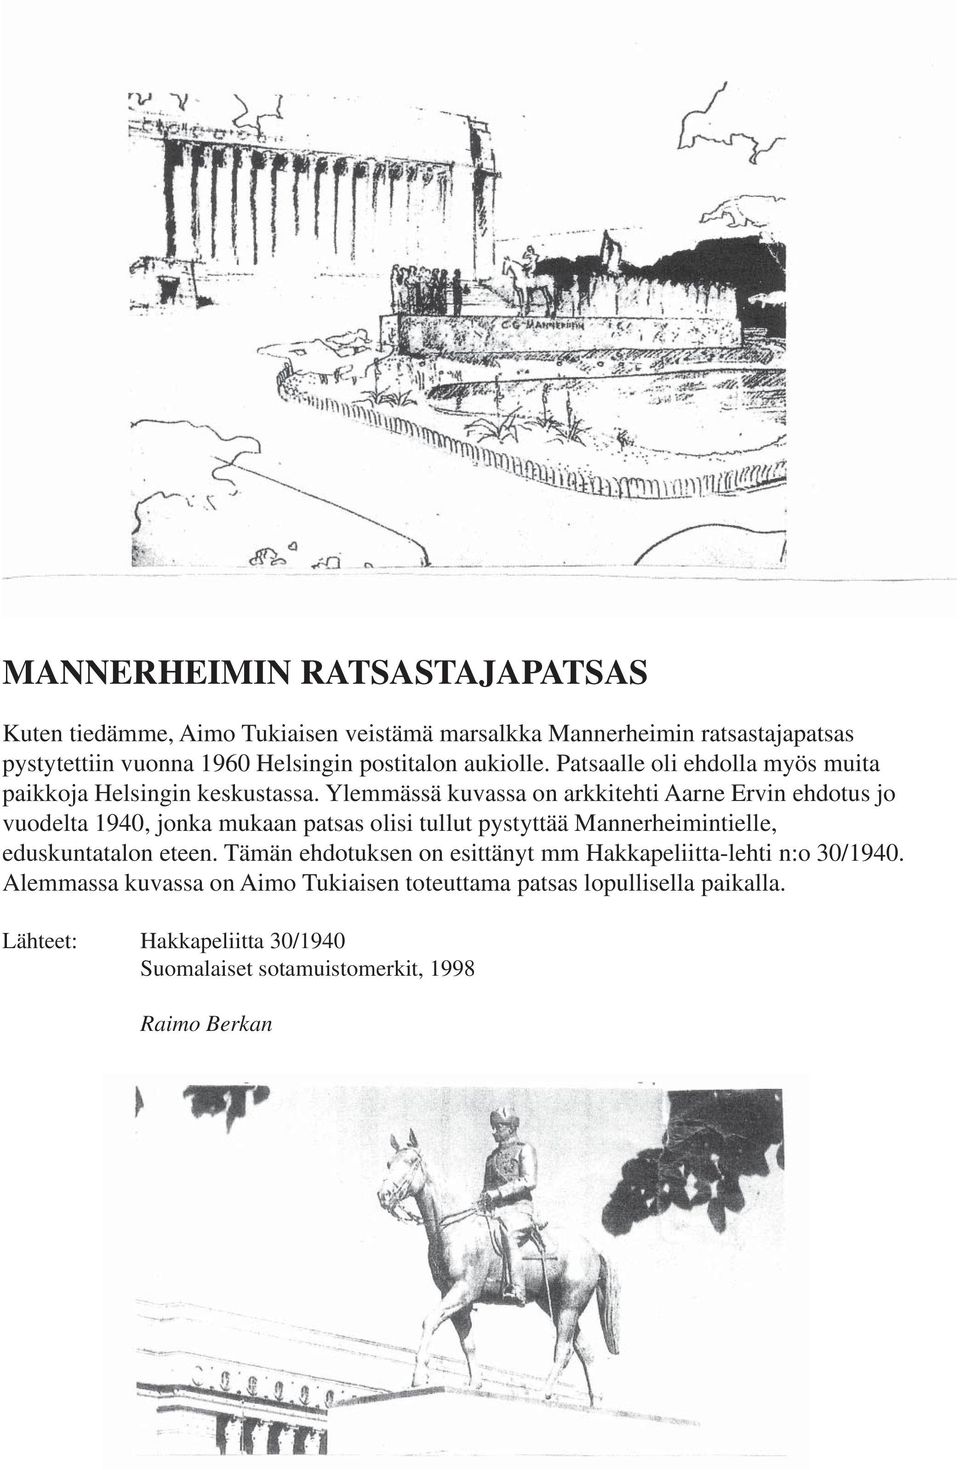 Ylemmässä kuvassa on arkkitehti Aarne Ervin ehdotus jo vuodelta 1940, jonka mukaan patsas olisi tullut pystyttää Mannerheimintielle, eduskuntatalon